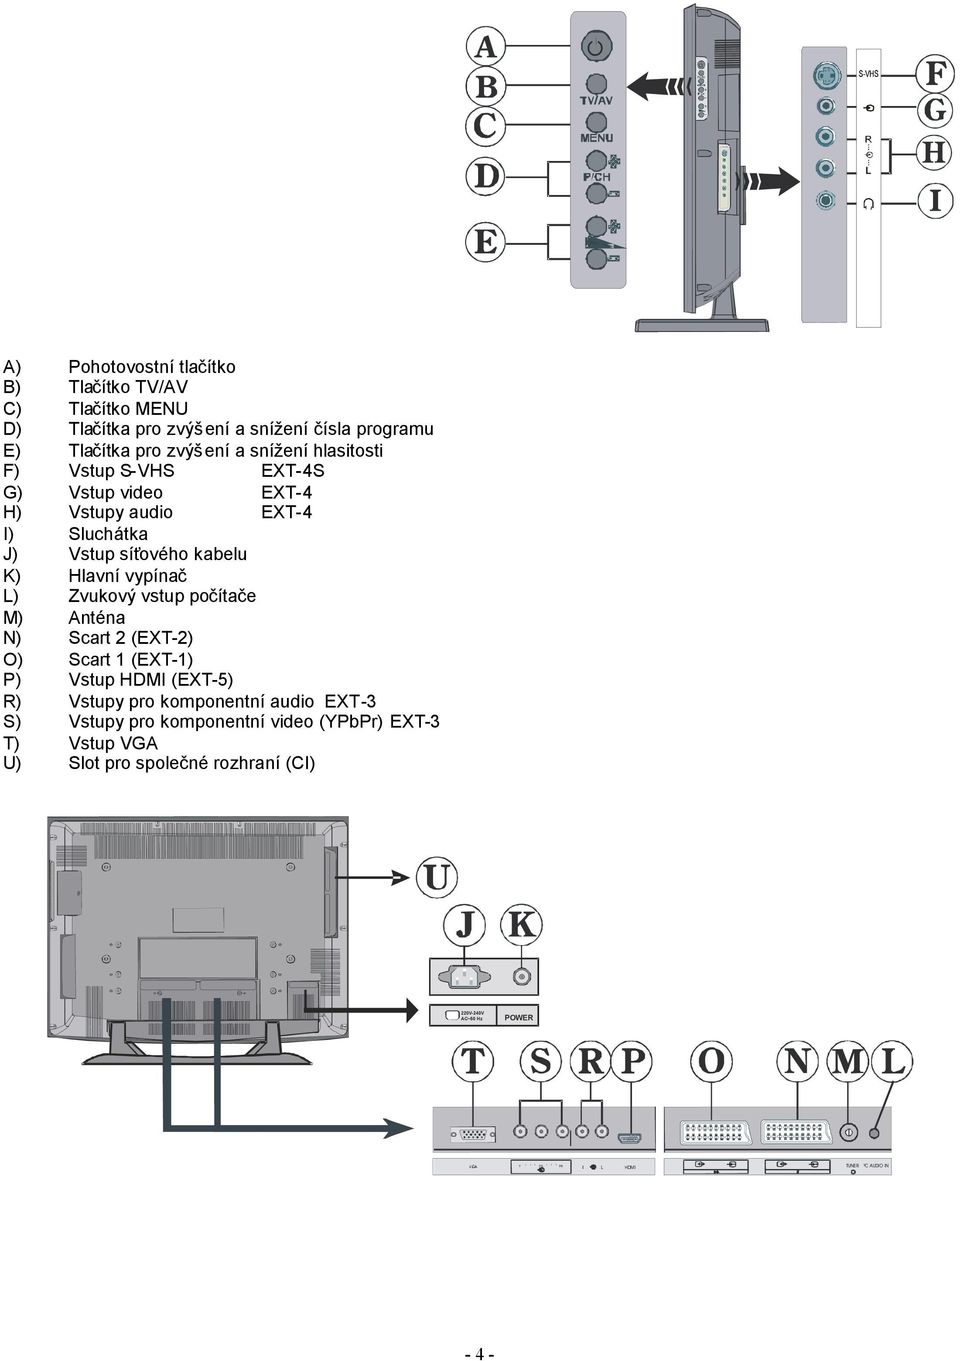 Zvukový vstup počítače M) Anténa N) Scart 2 (EXT-2) O) Scart 1 (EXT-1) P) Vstup HDMI (EXT-5) R) Vstupy pro komponentní audio EXT-3 S) Vstupy pro